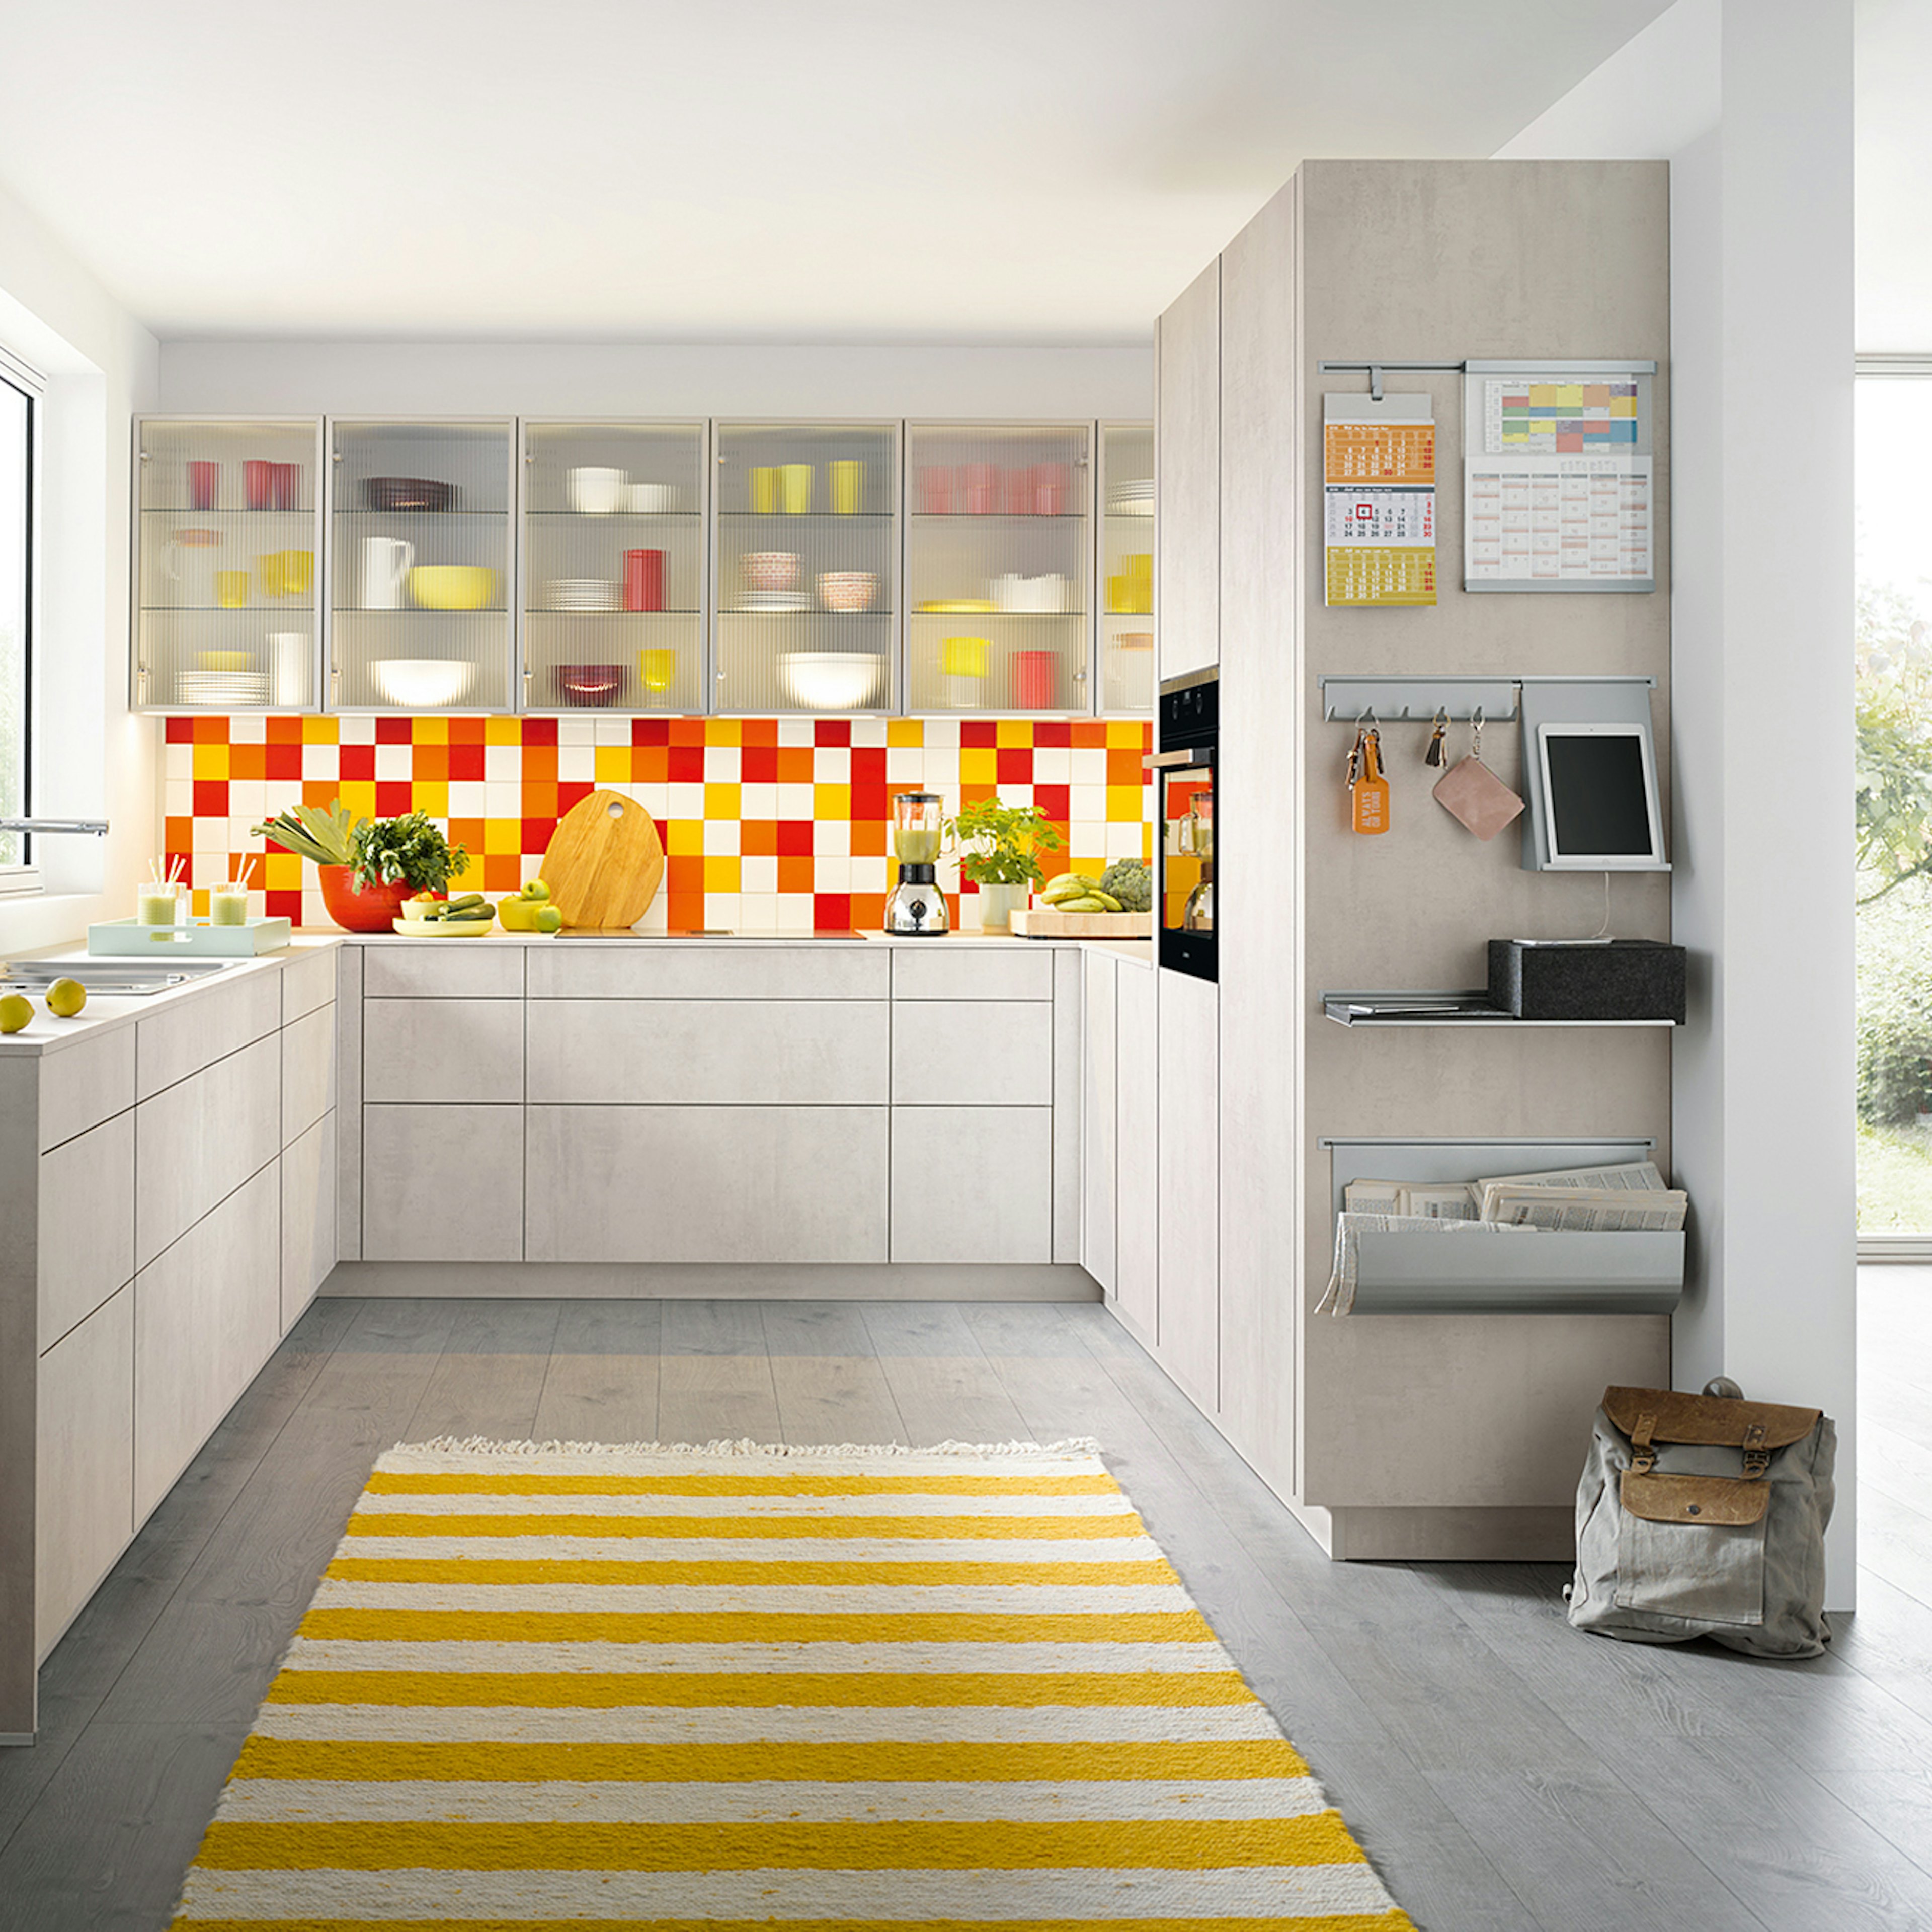 U-keuken in een neutrale kleur met kleurrijke accenten.